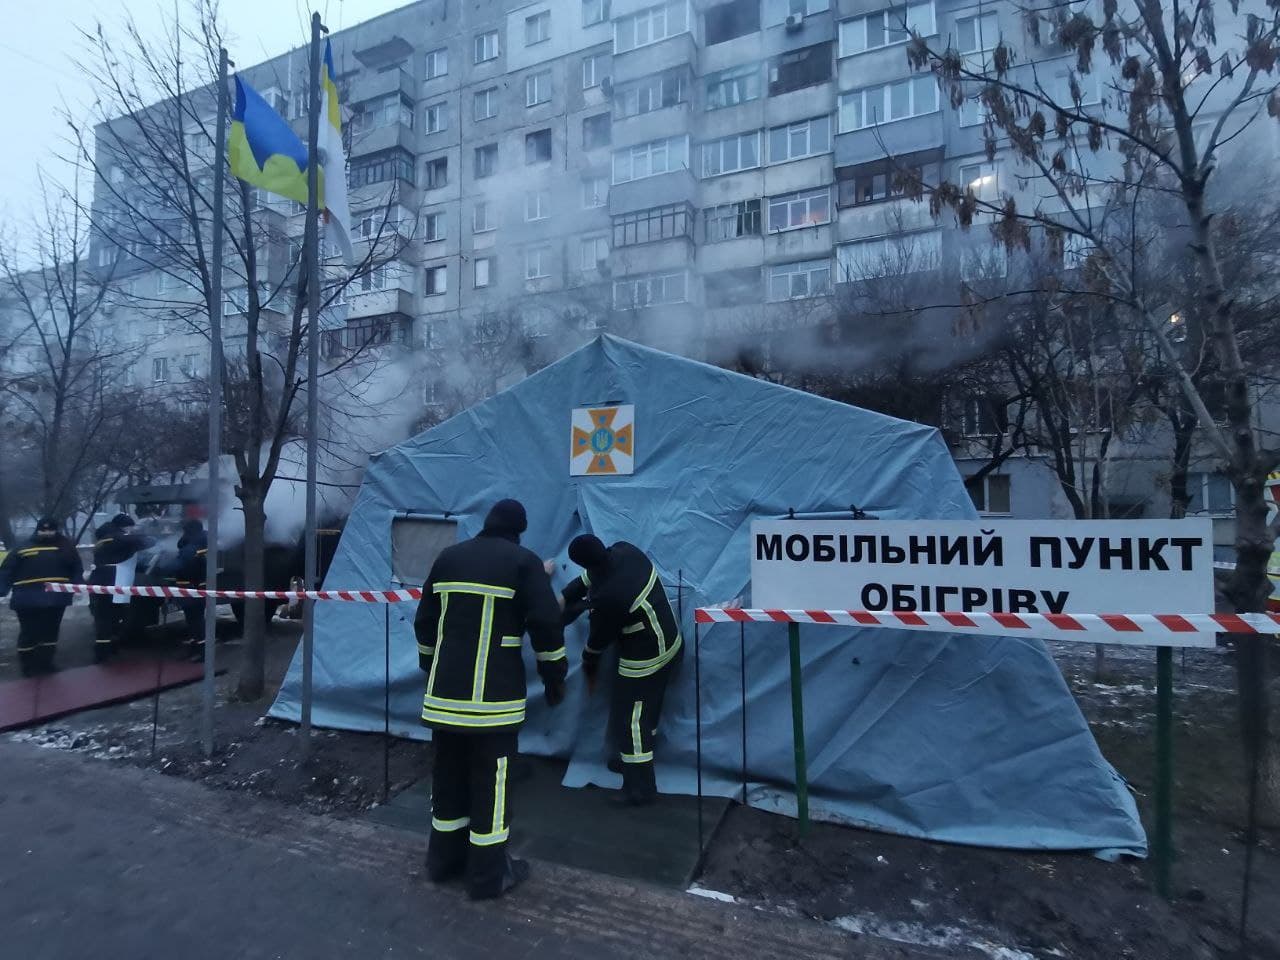 Як минула ніч біля будинку в Кропивницькому, де стався вибух (ФОТО)